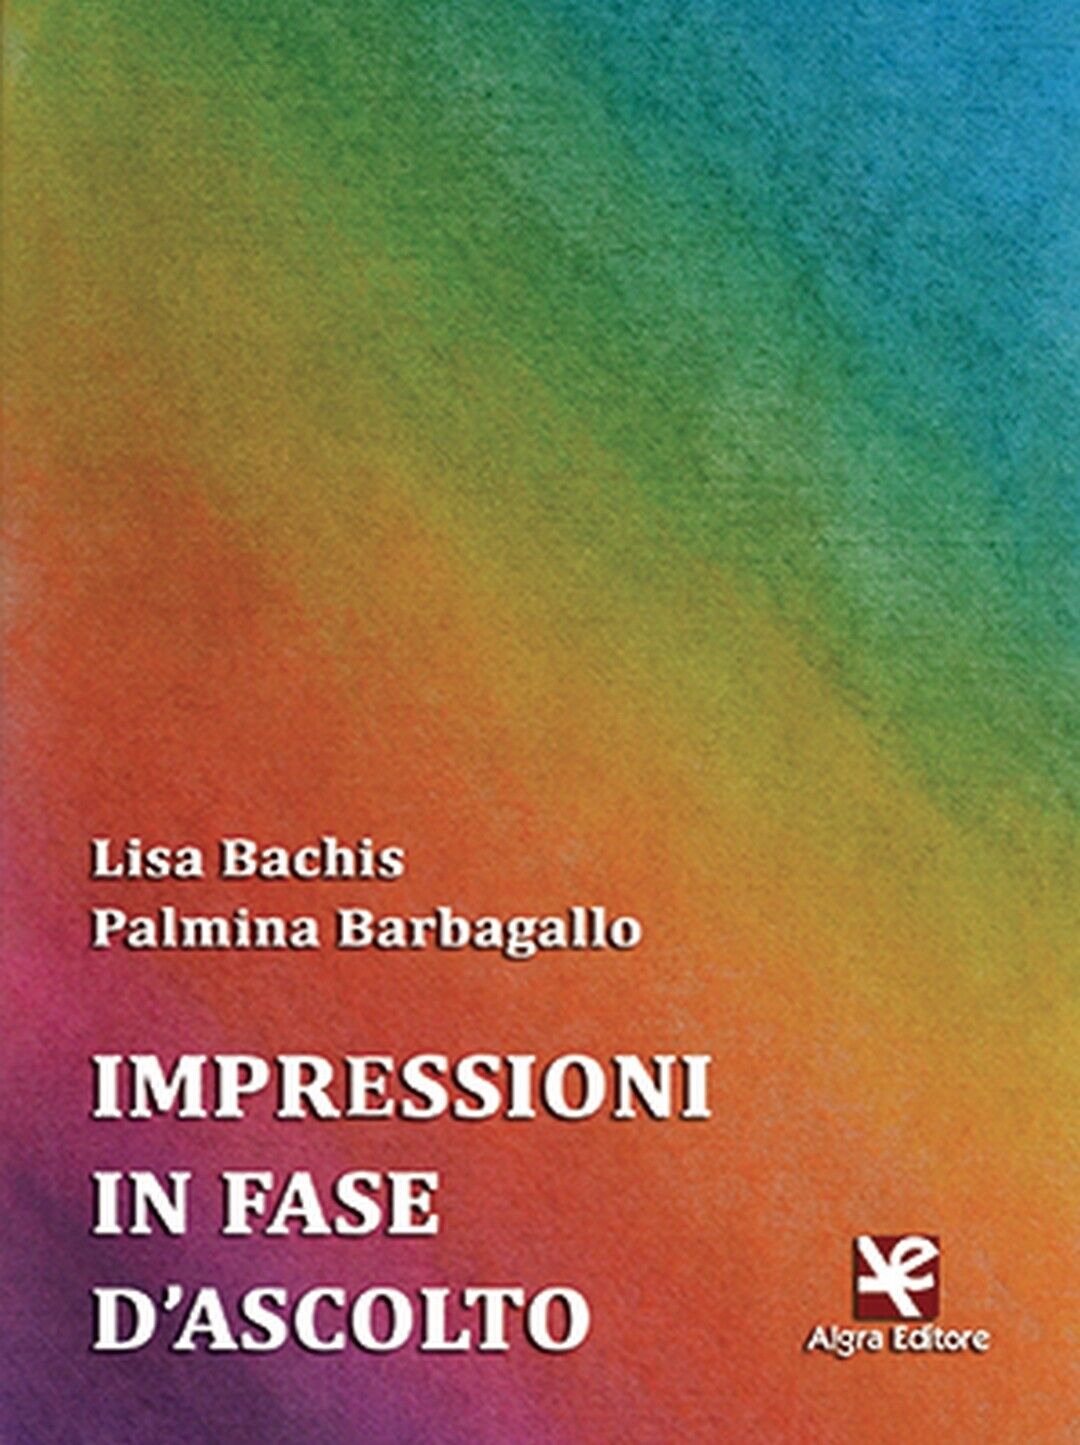 Impressioni in fase d'ascolto  di Lisa Bachis,  Algra Editore